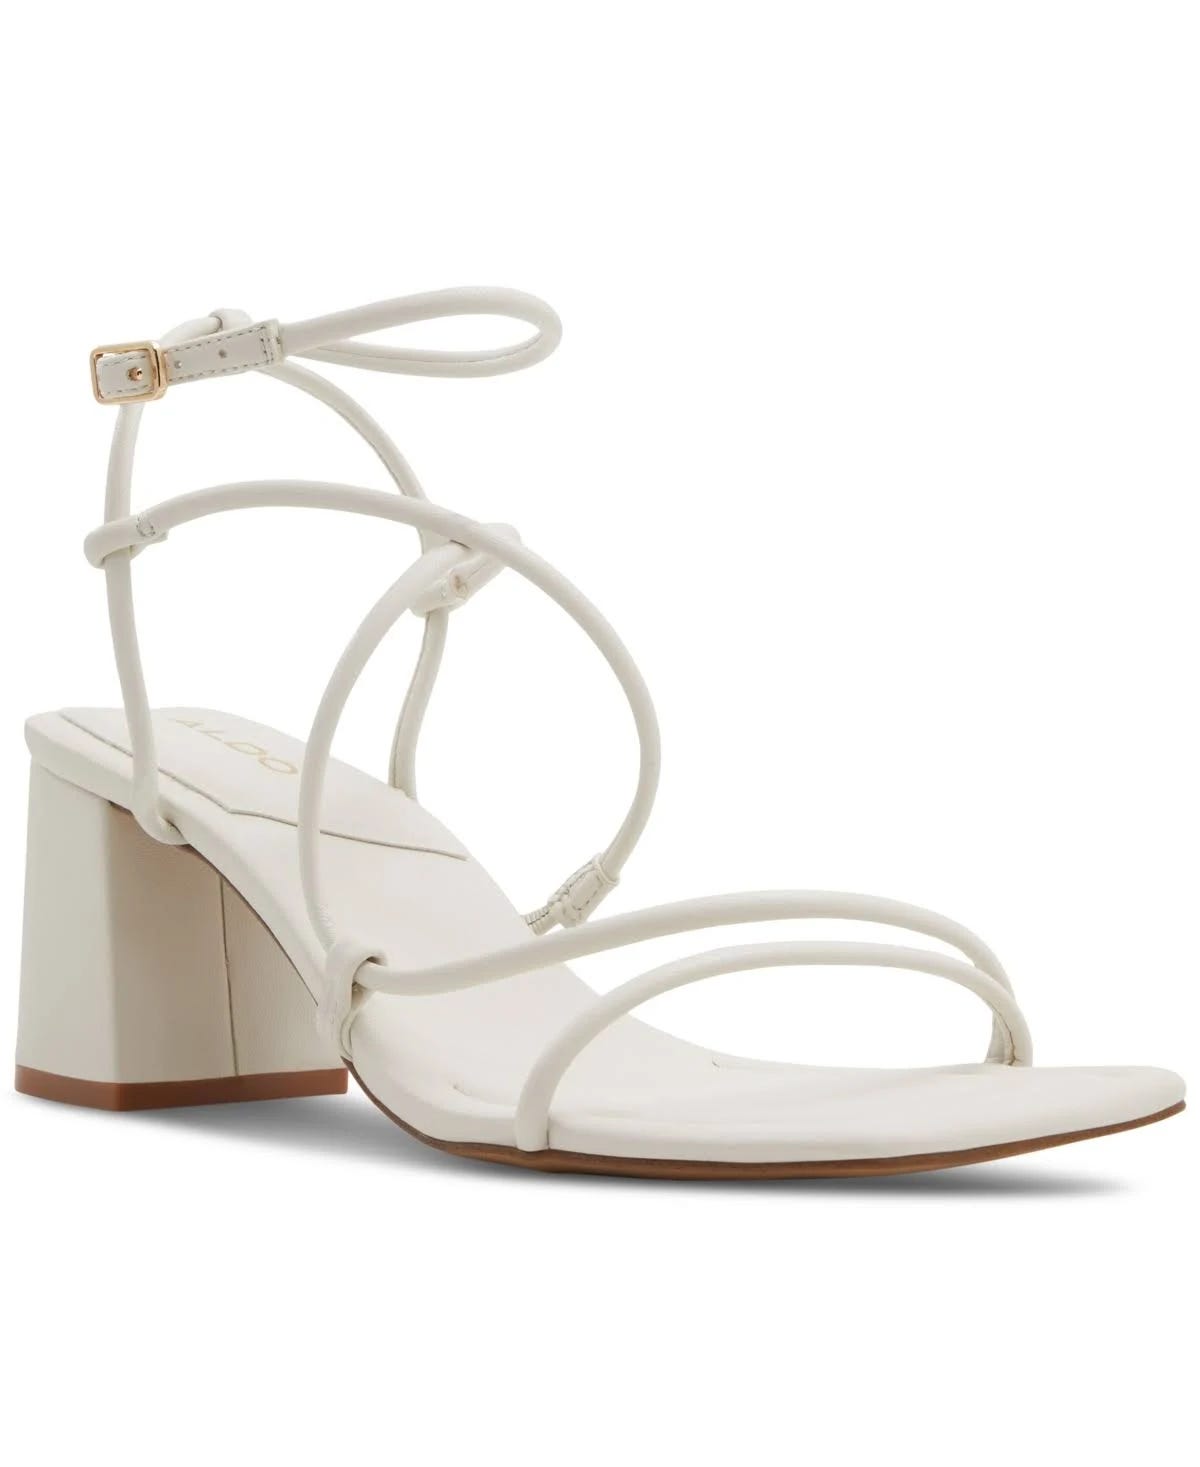 Aldo Harmonni Strappy White Ankle Sandals | Image